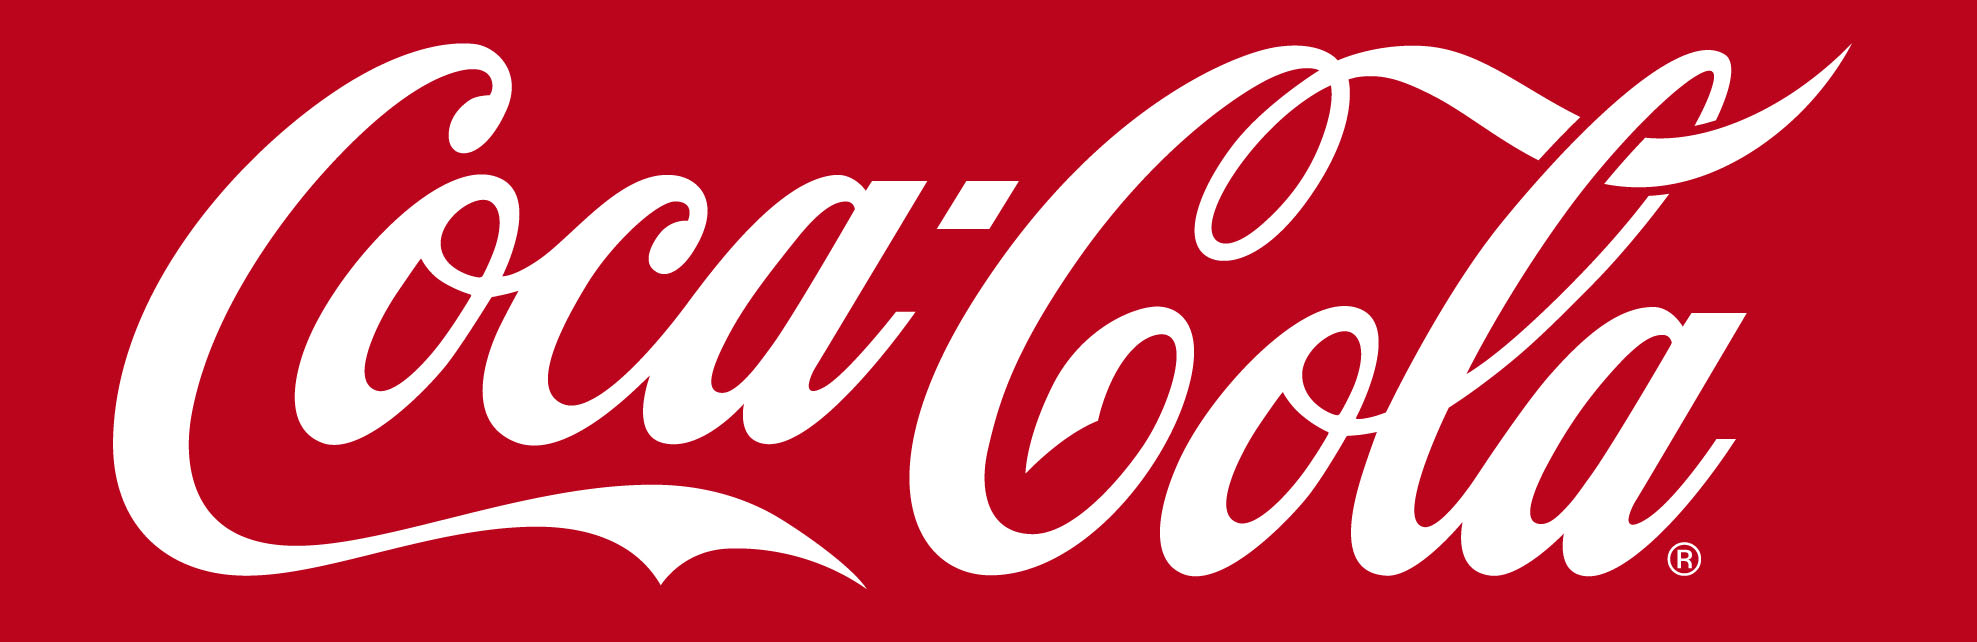 Идеальное сочетание: Coca-Cola и лед…, точнее, ледовый парк.